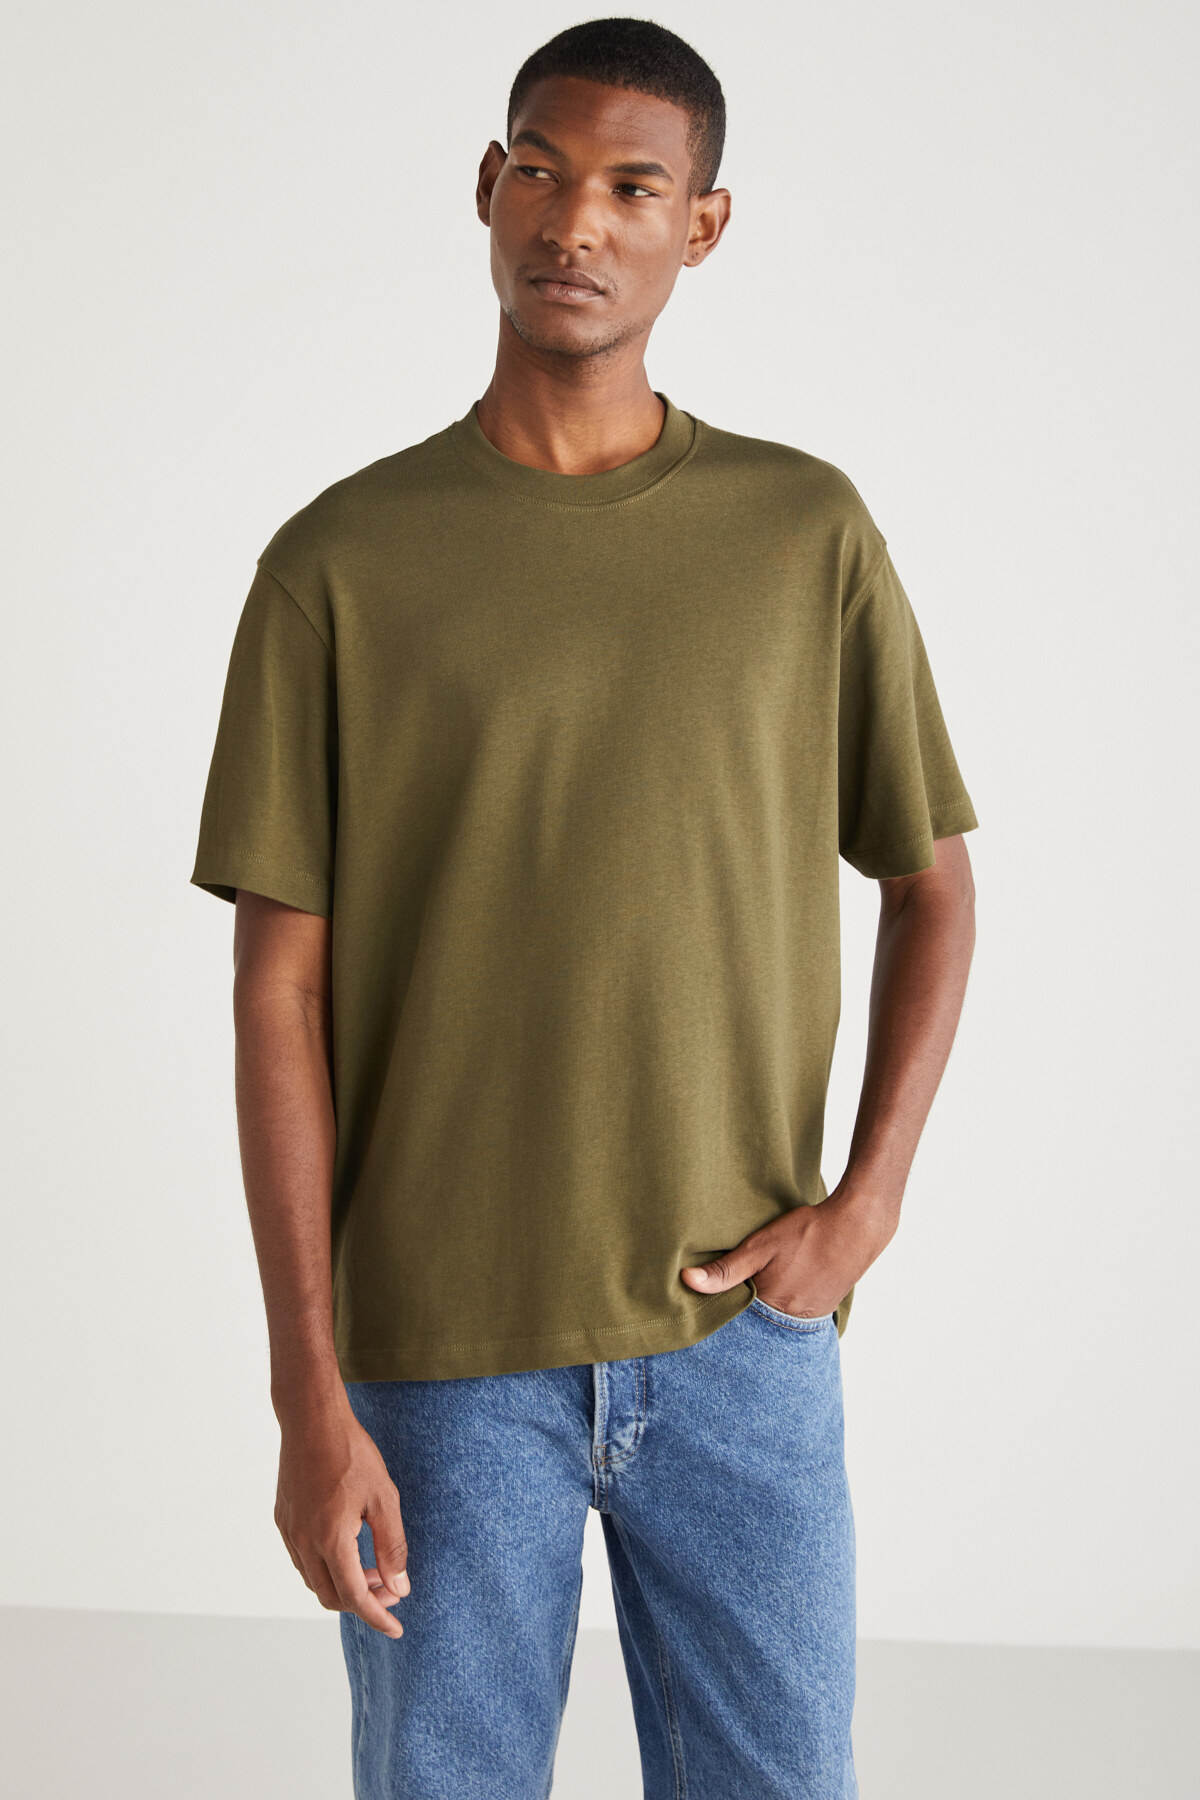 Levně GRIMELANGE Curtıs Men's Comfort Fit Thick Textured Recycle 100% Cotton T-shirt